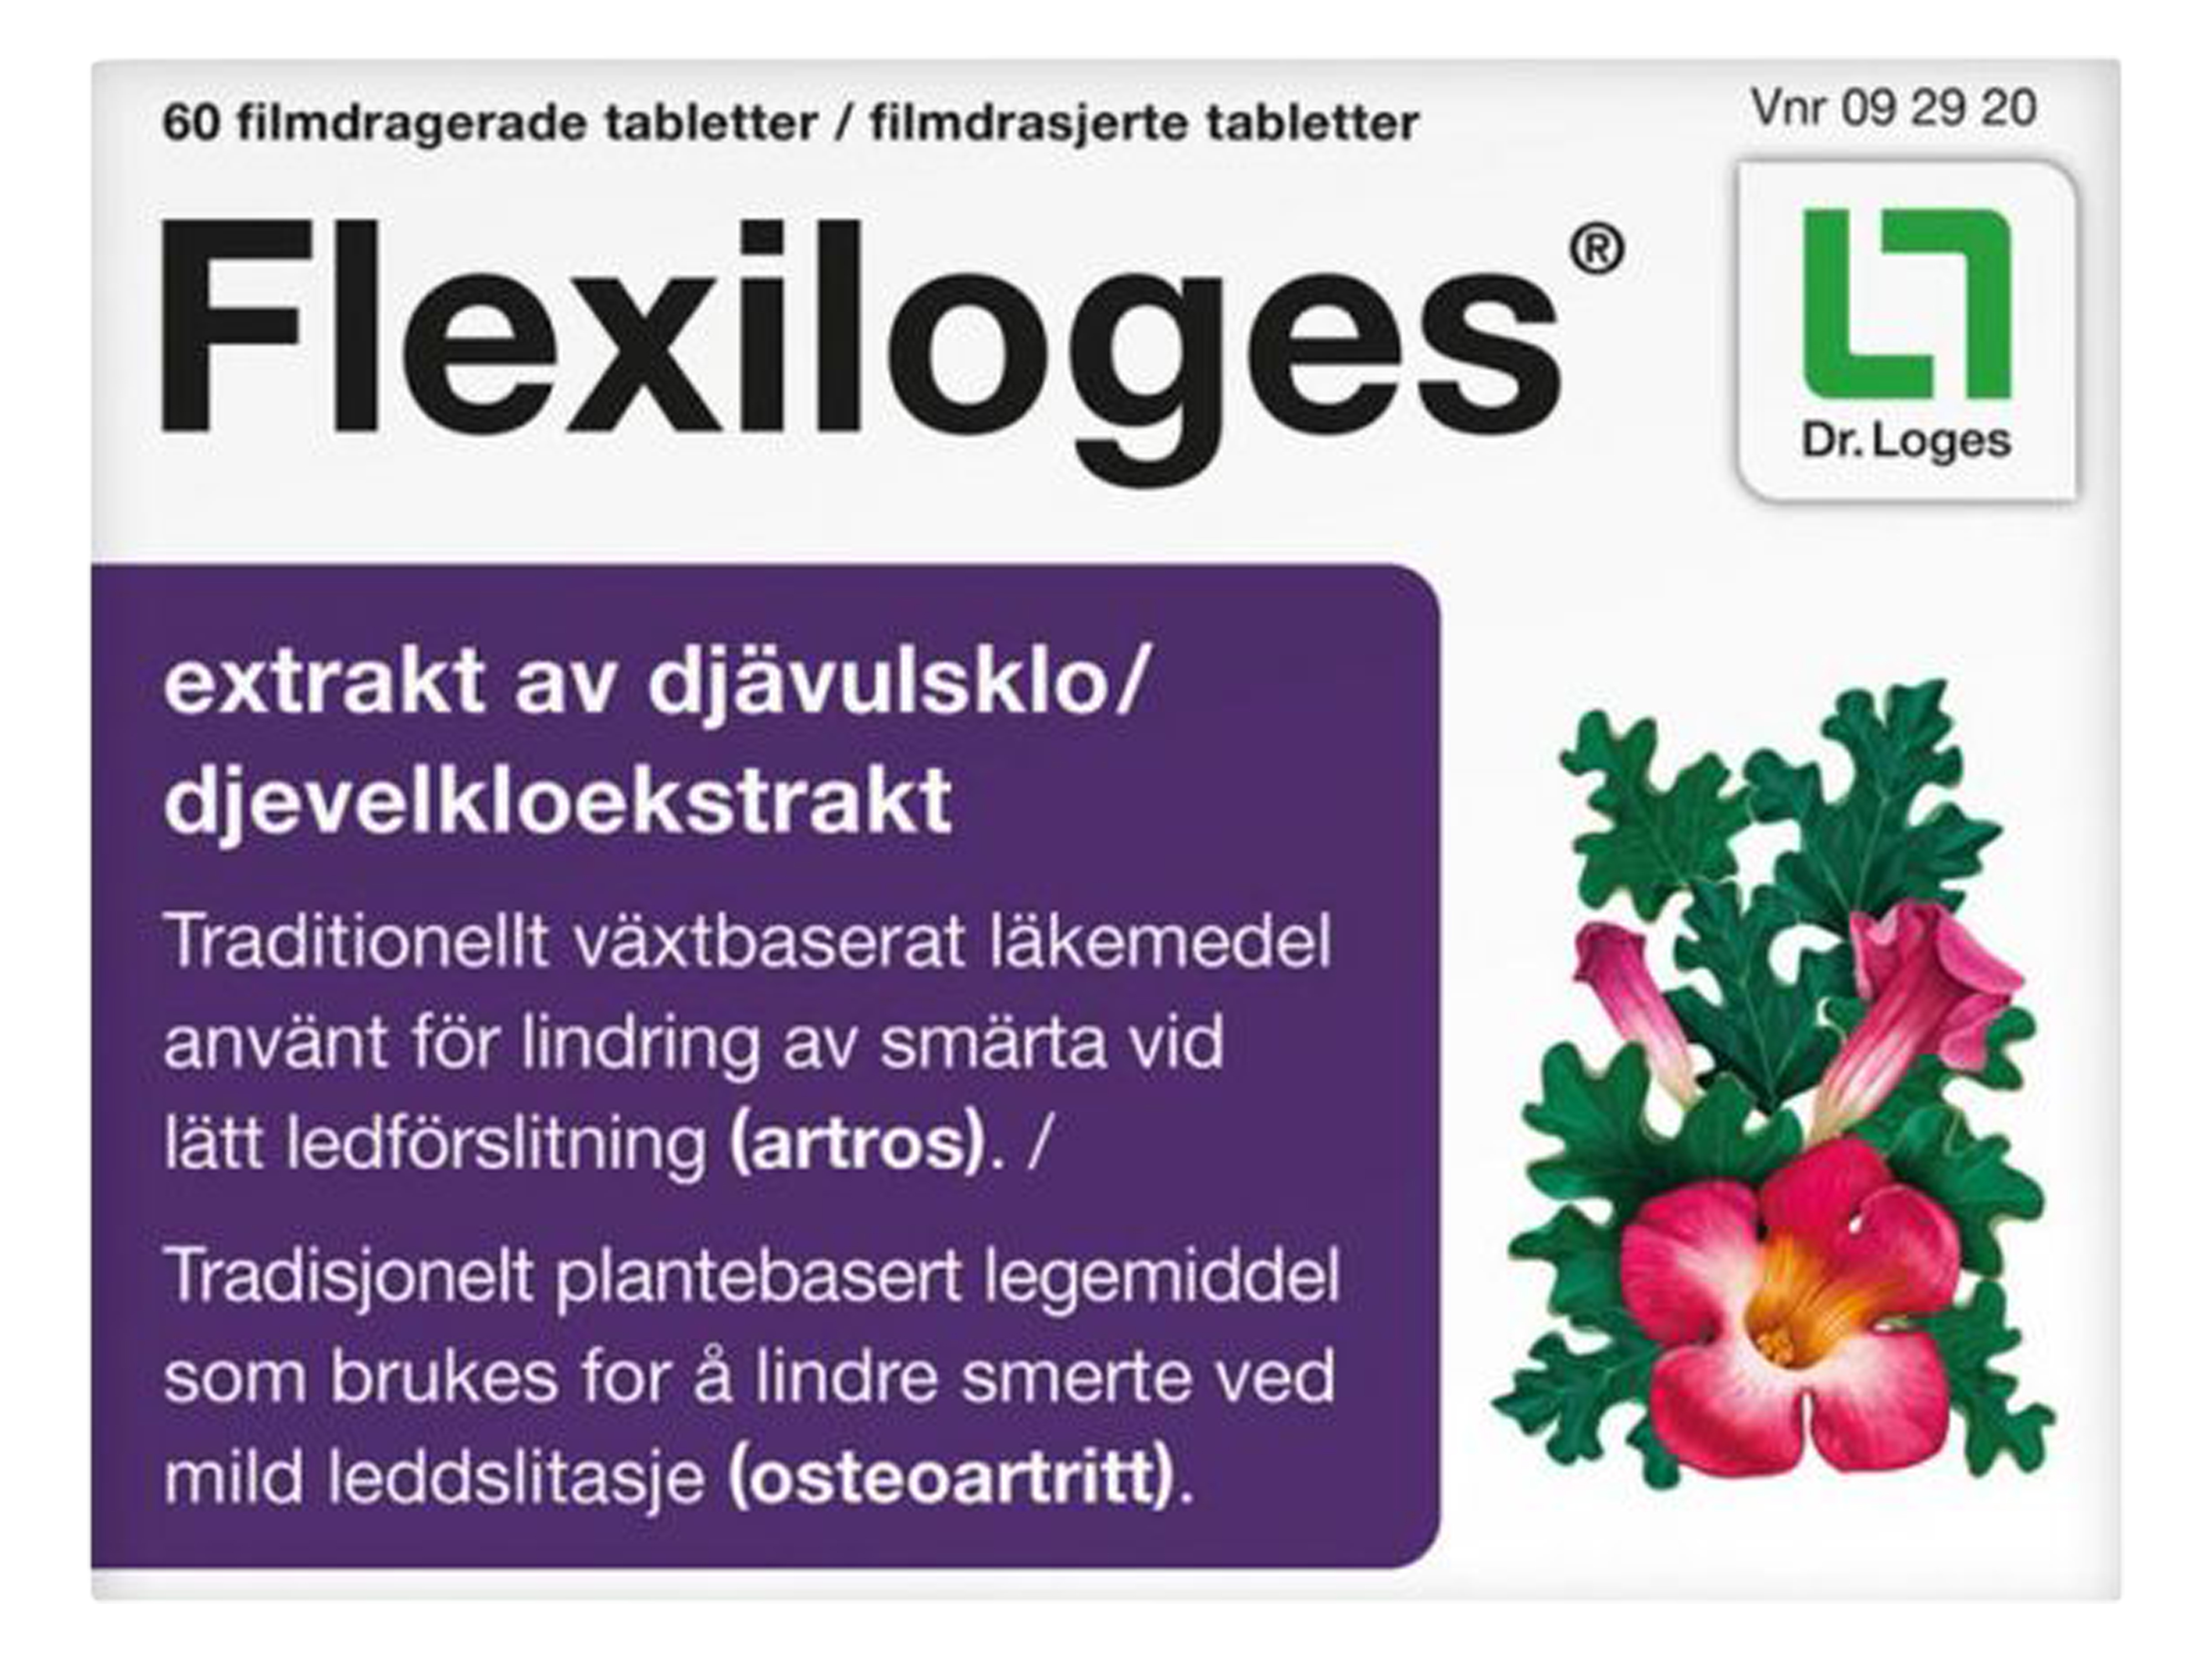 Flexiloges Filmdrasjerte tabletter, 60 tabletter